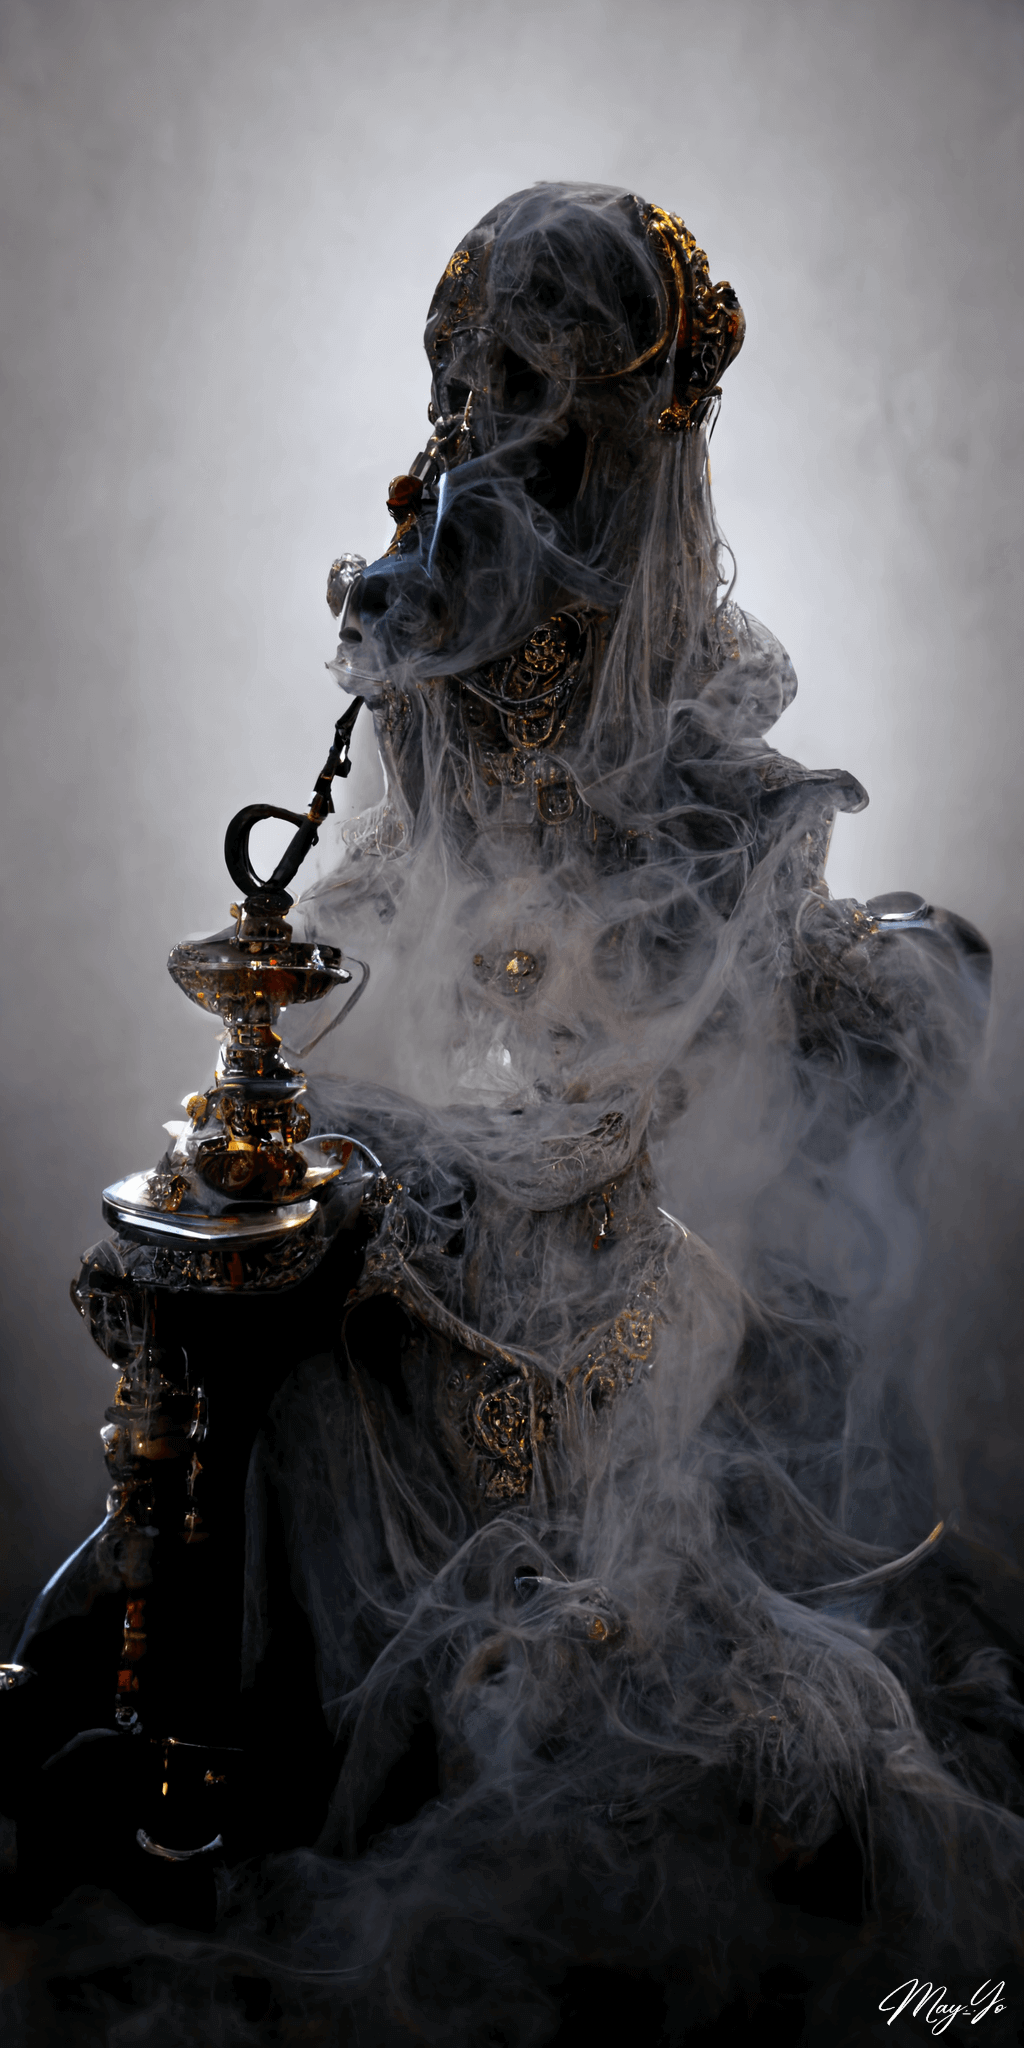 シーシャを吸うゴーストの壁紙イラスト 退廃的な貴婦人の死神の待受 AIイラスト待受 縦長画像 shisha ghost illustration fiction art